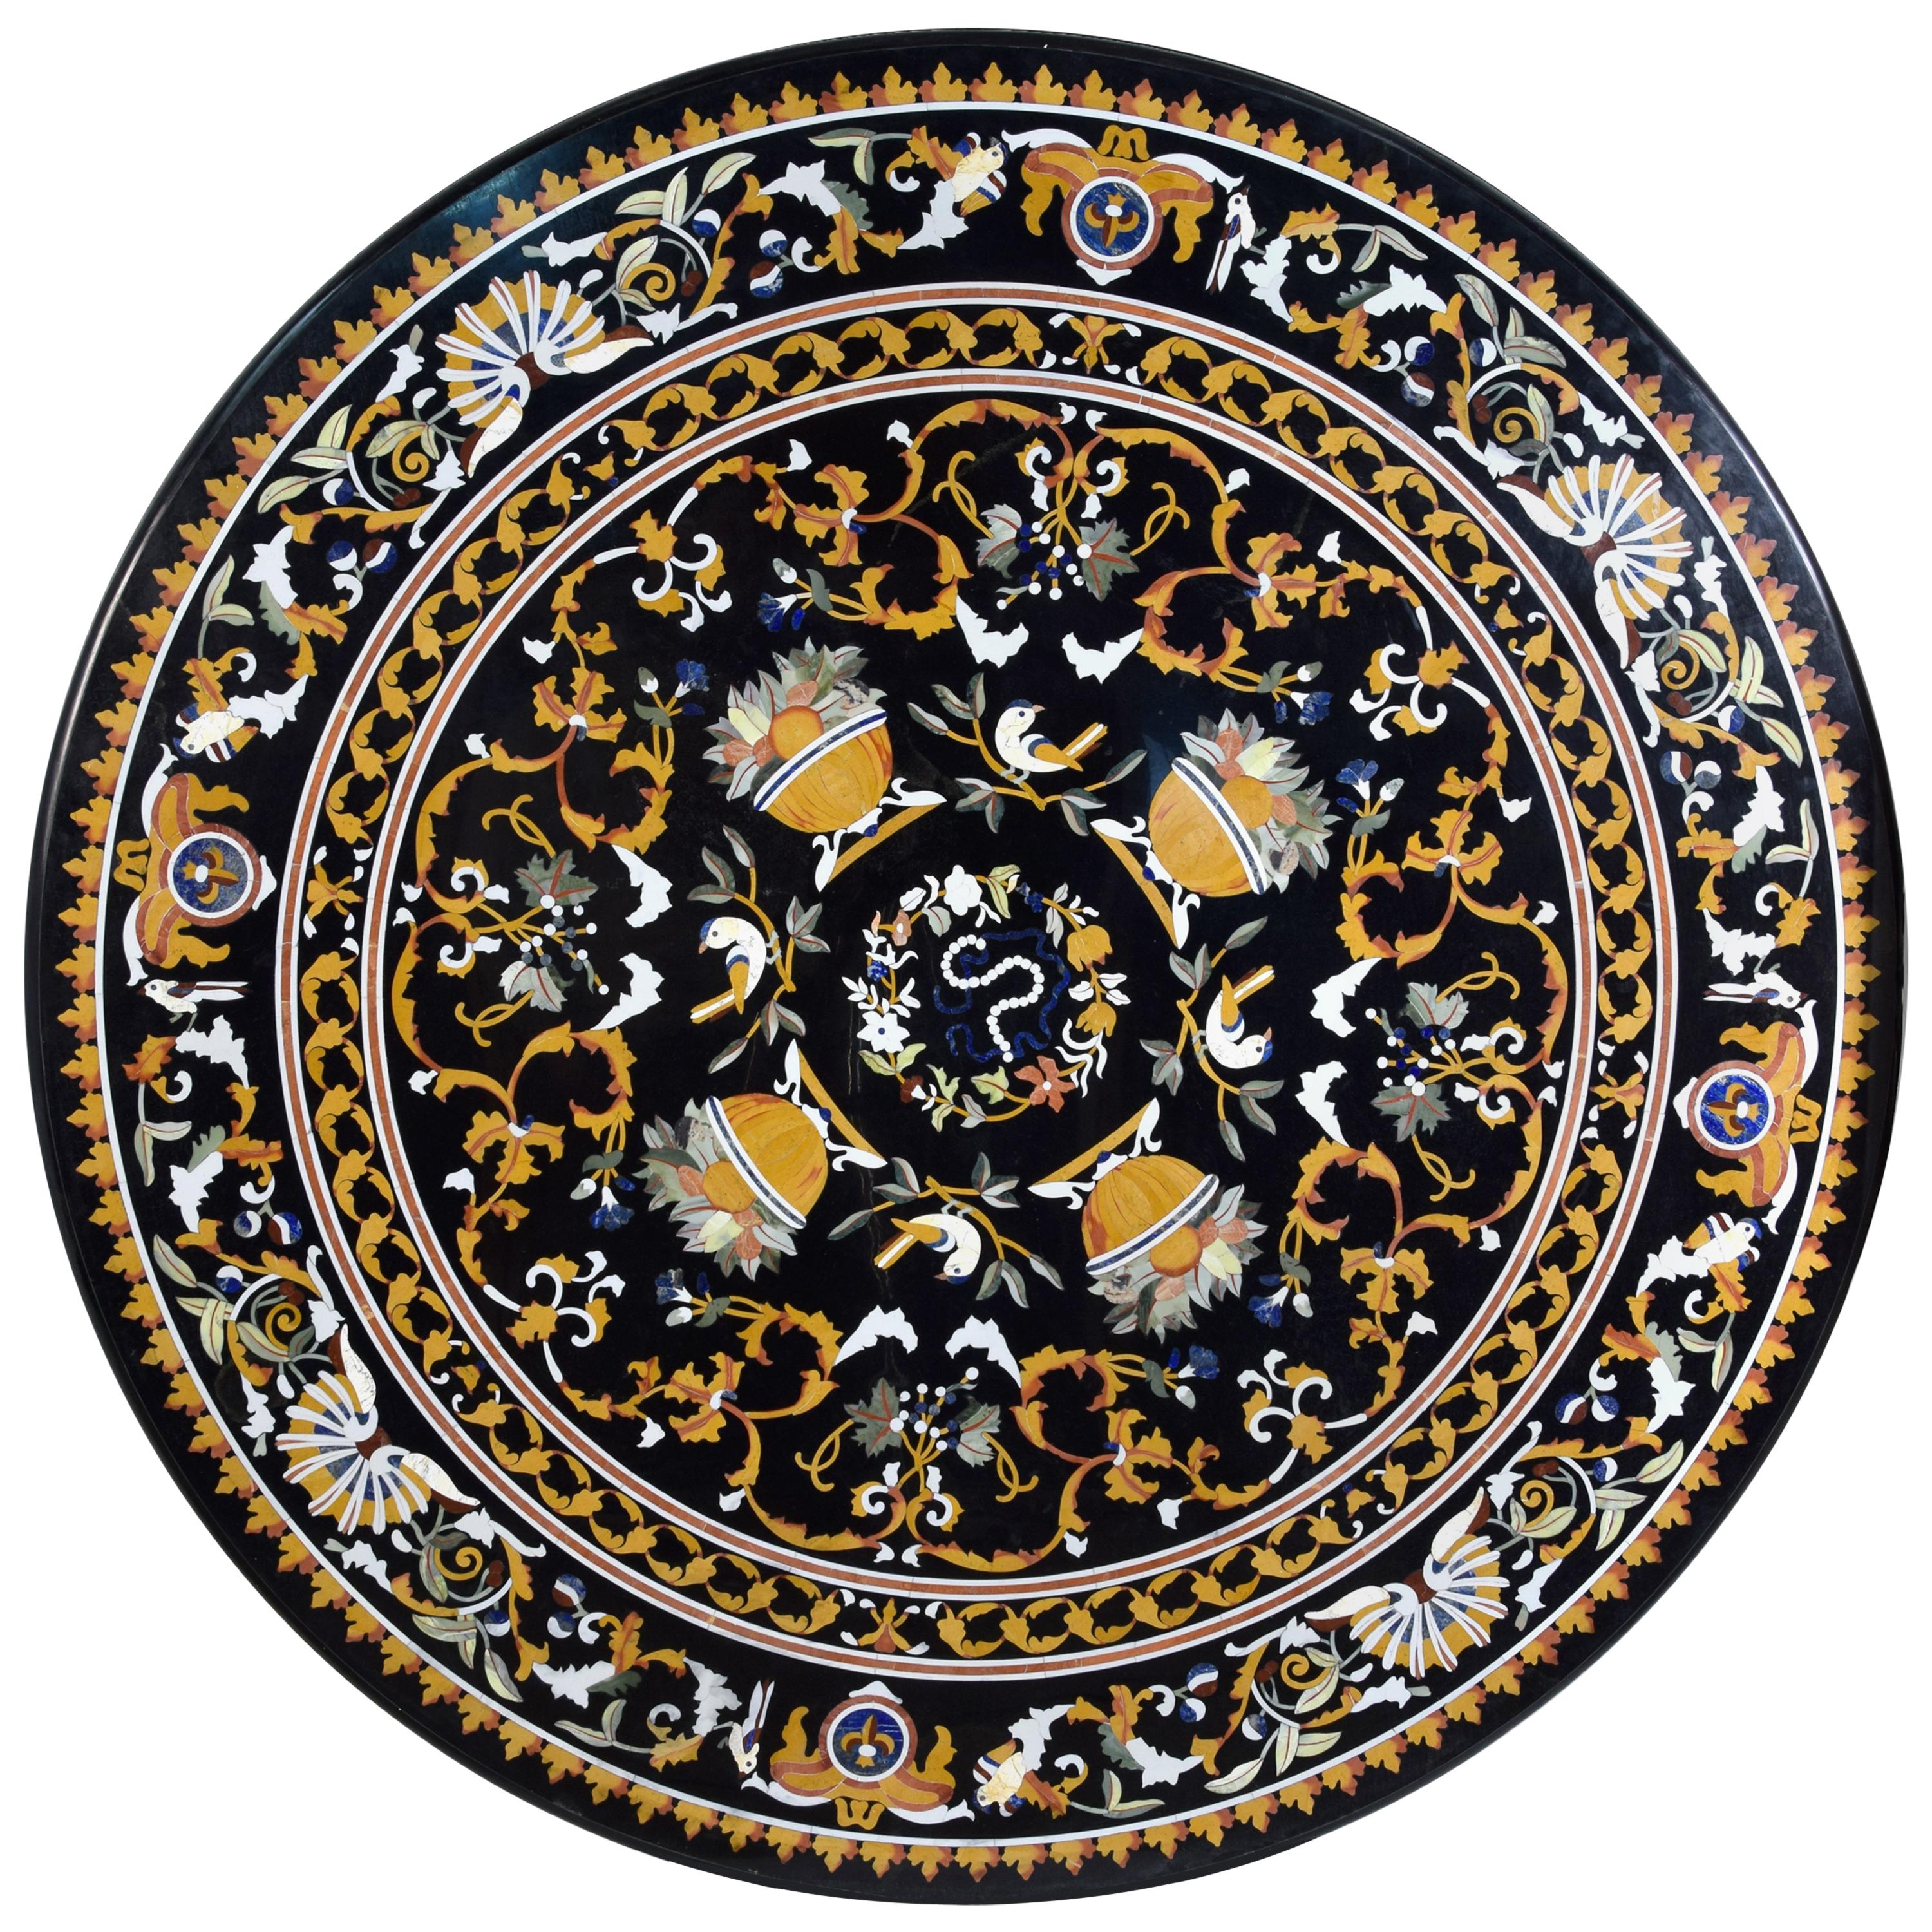 Circular "Pietra Dura" Tabletop, Marble and Hardstones